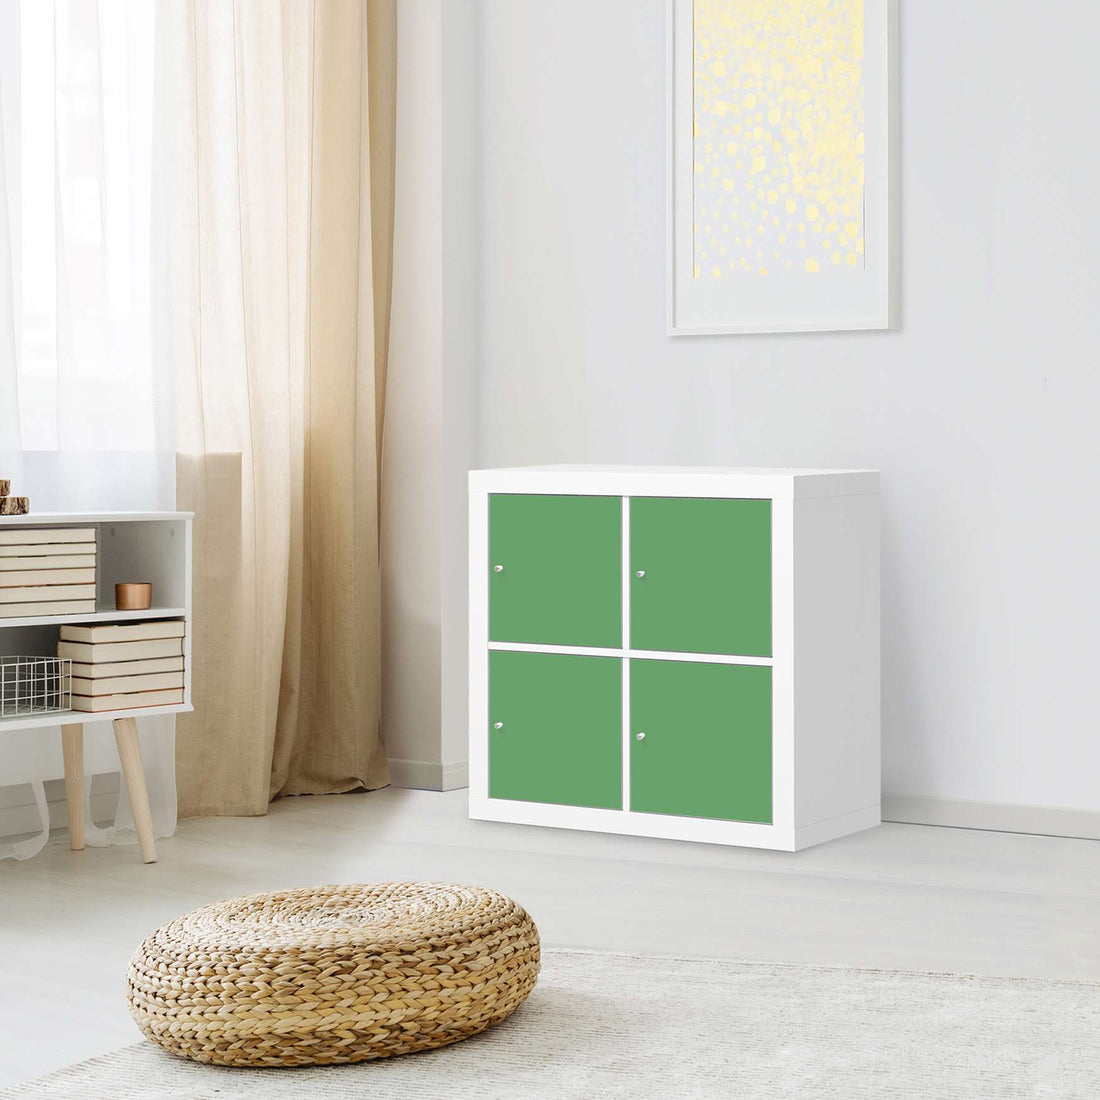 Klebefolie für Möbel Grün Light - IKEA Kallax Regal 4 Türen - Wohnzimmer